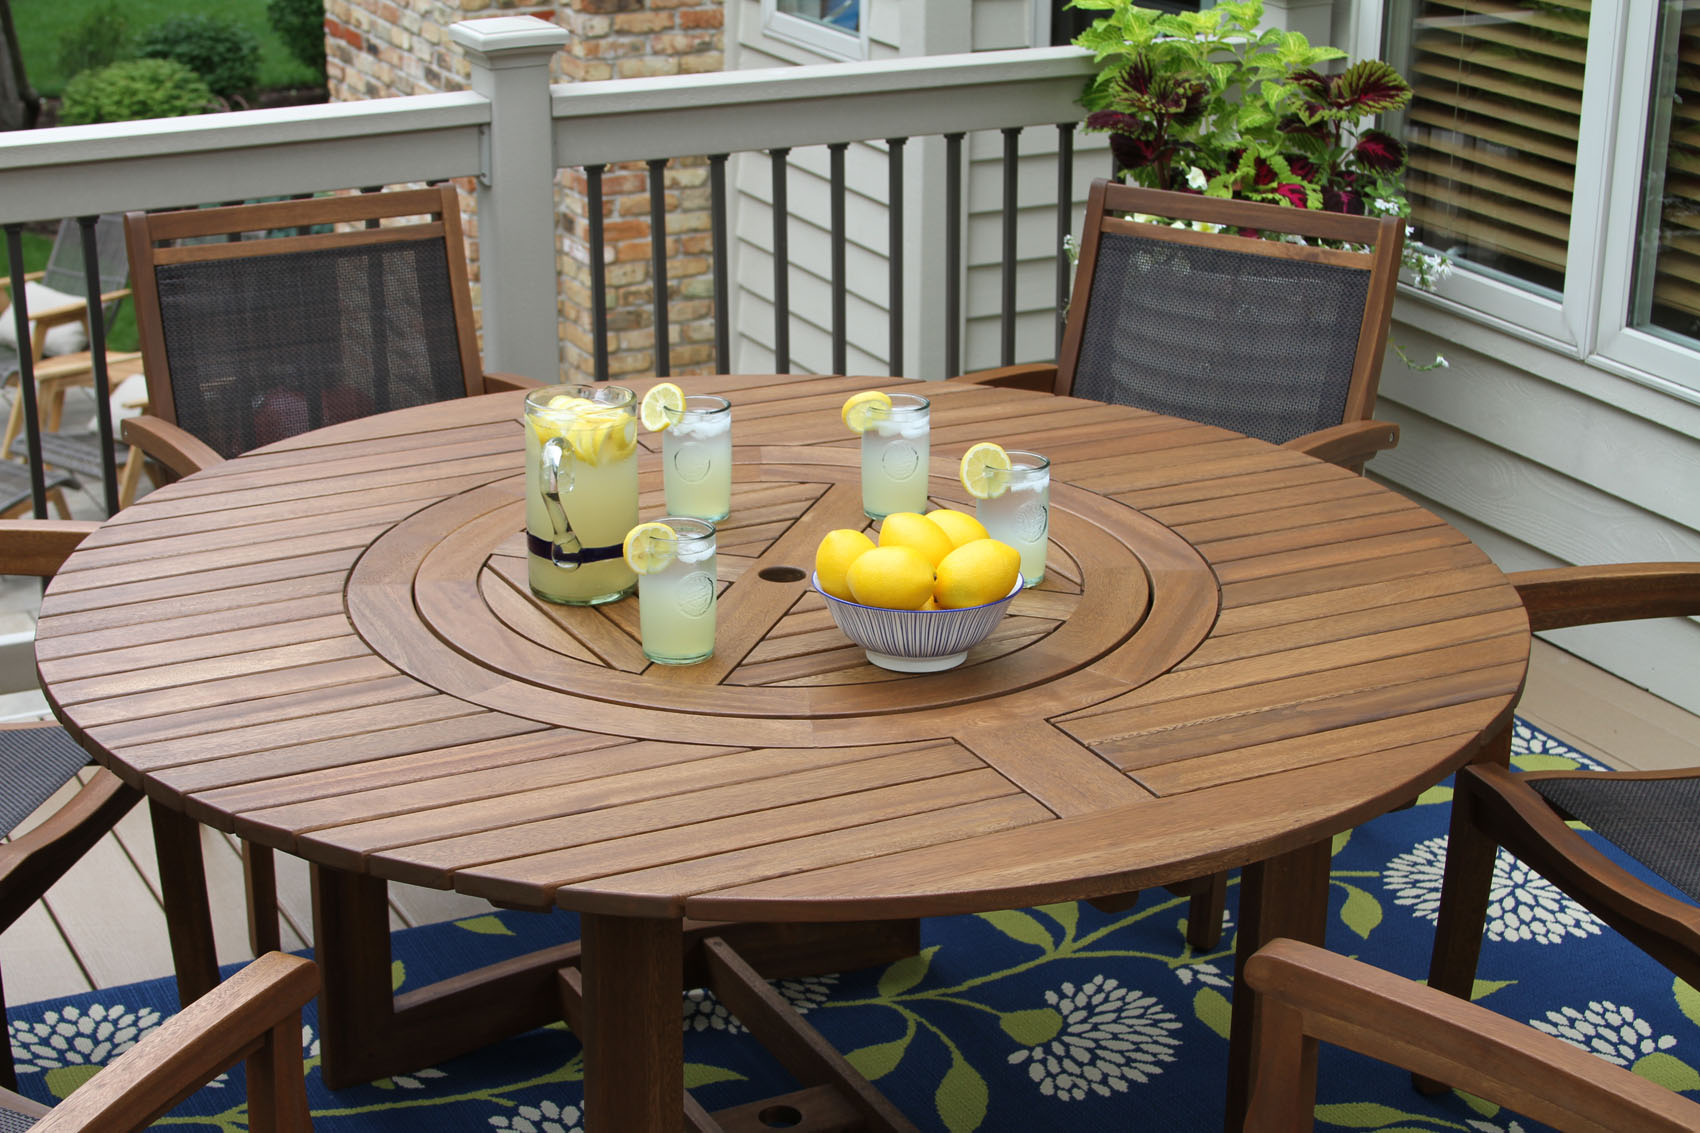 mesas e cadeiras feitas de eucalipto. Com limonada e copos por cima da mesa